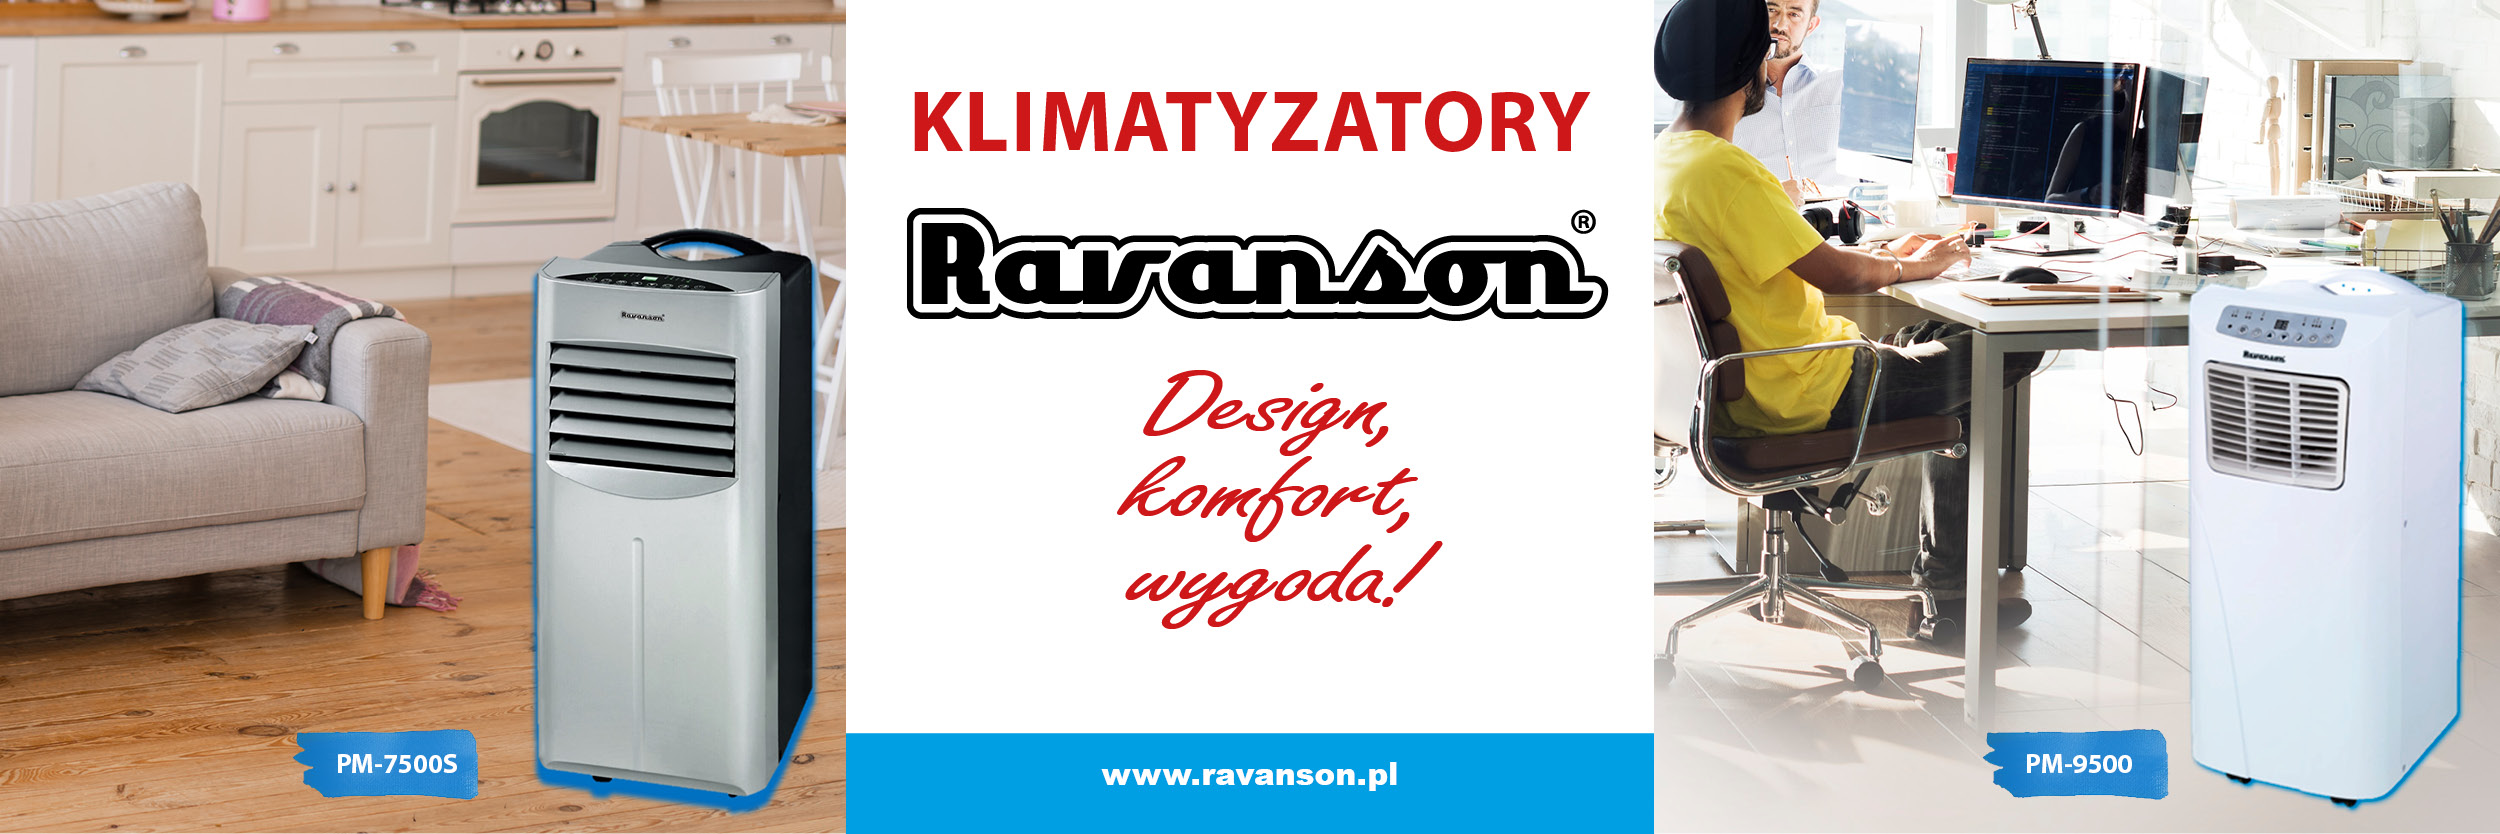 Ravanson_klimatyzatory-SDA-www-NS06